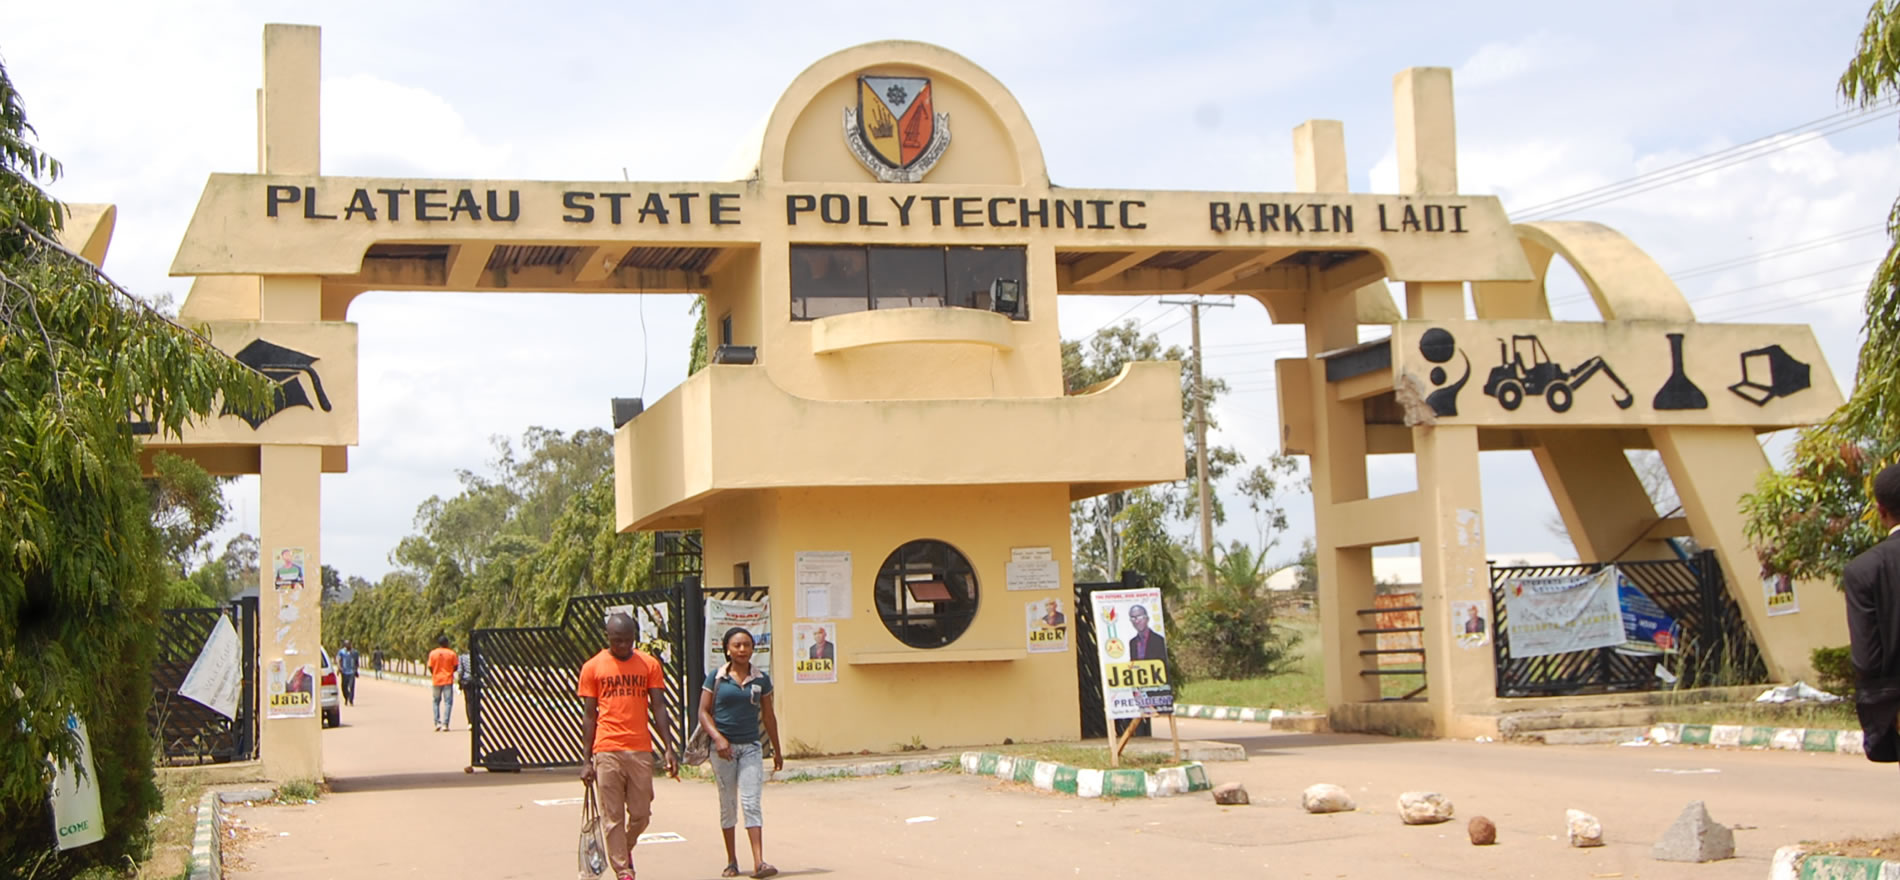 Plateau State Polytechnic